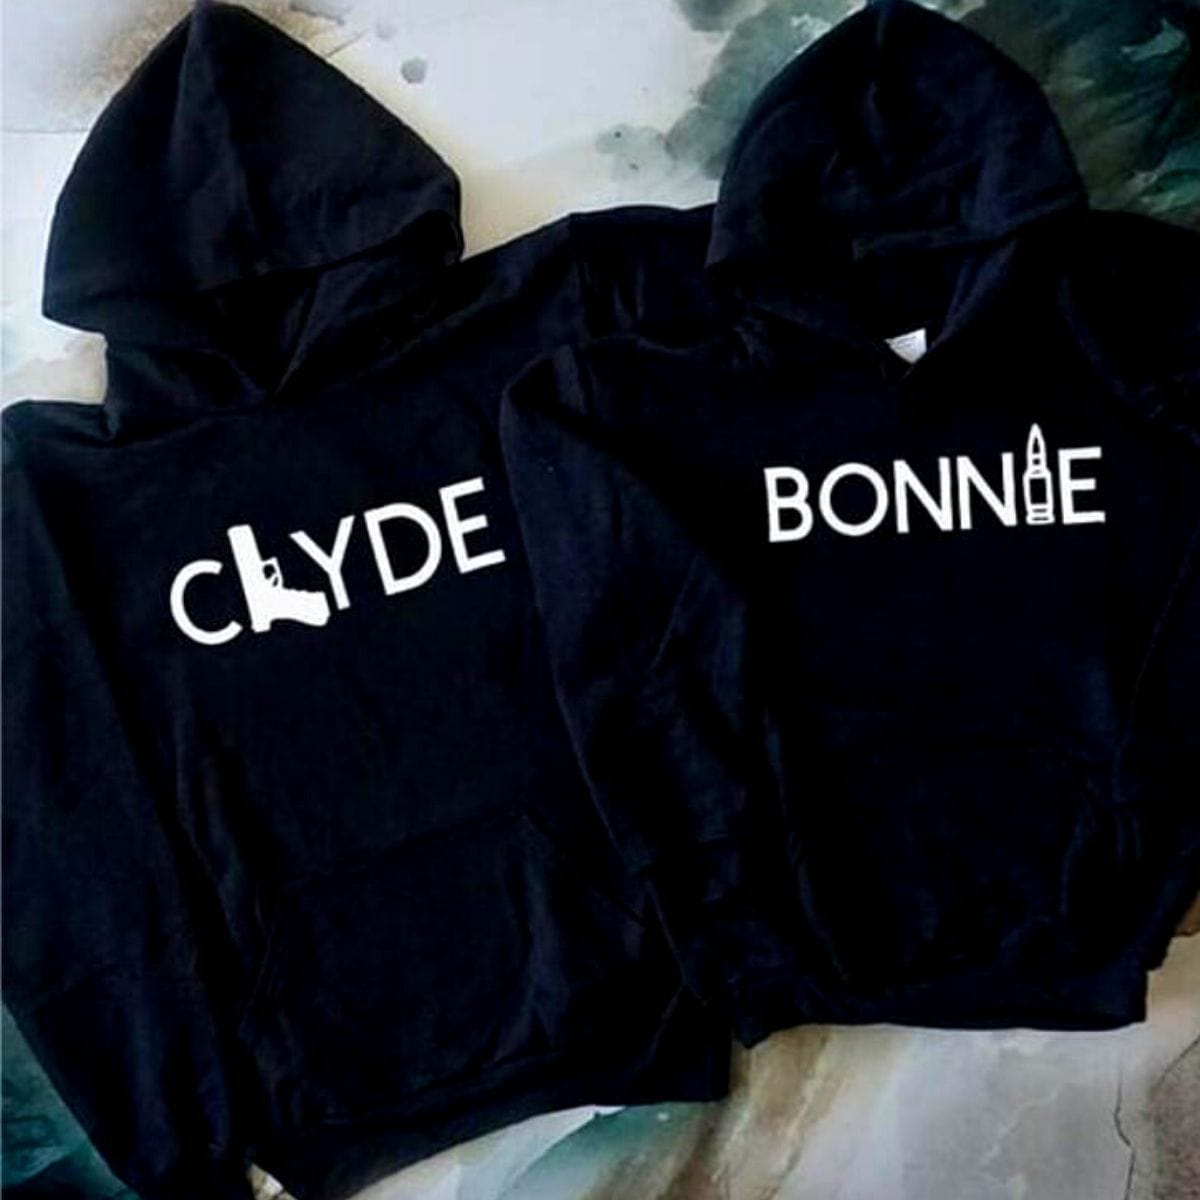 Bonnie & Clyde Hoodies